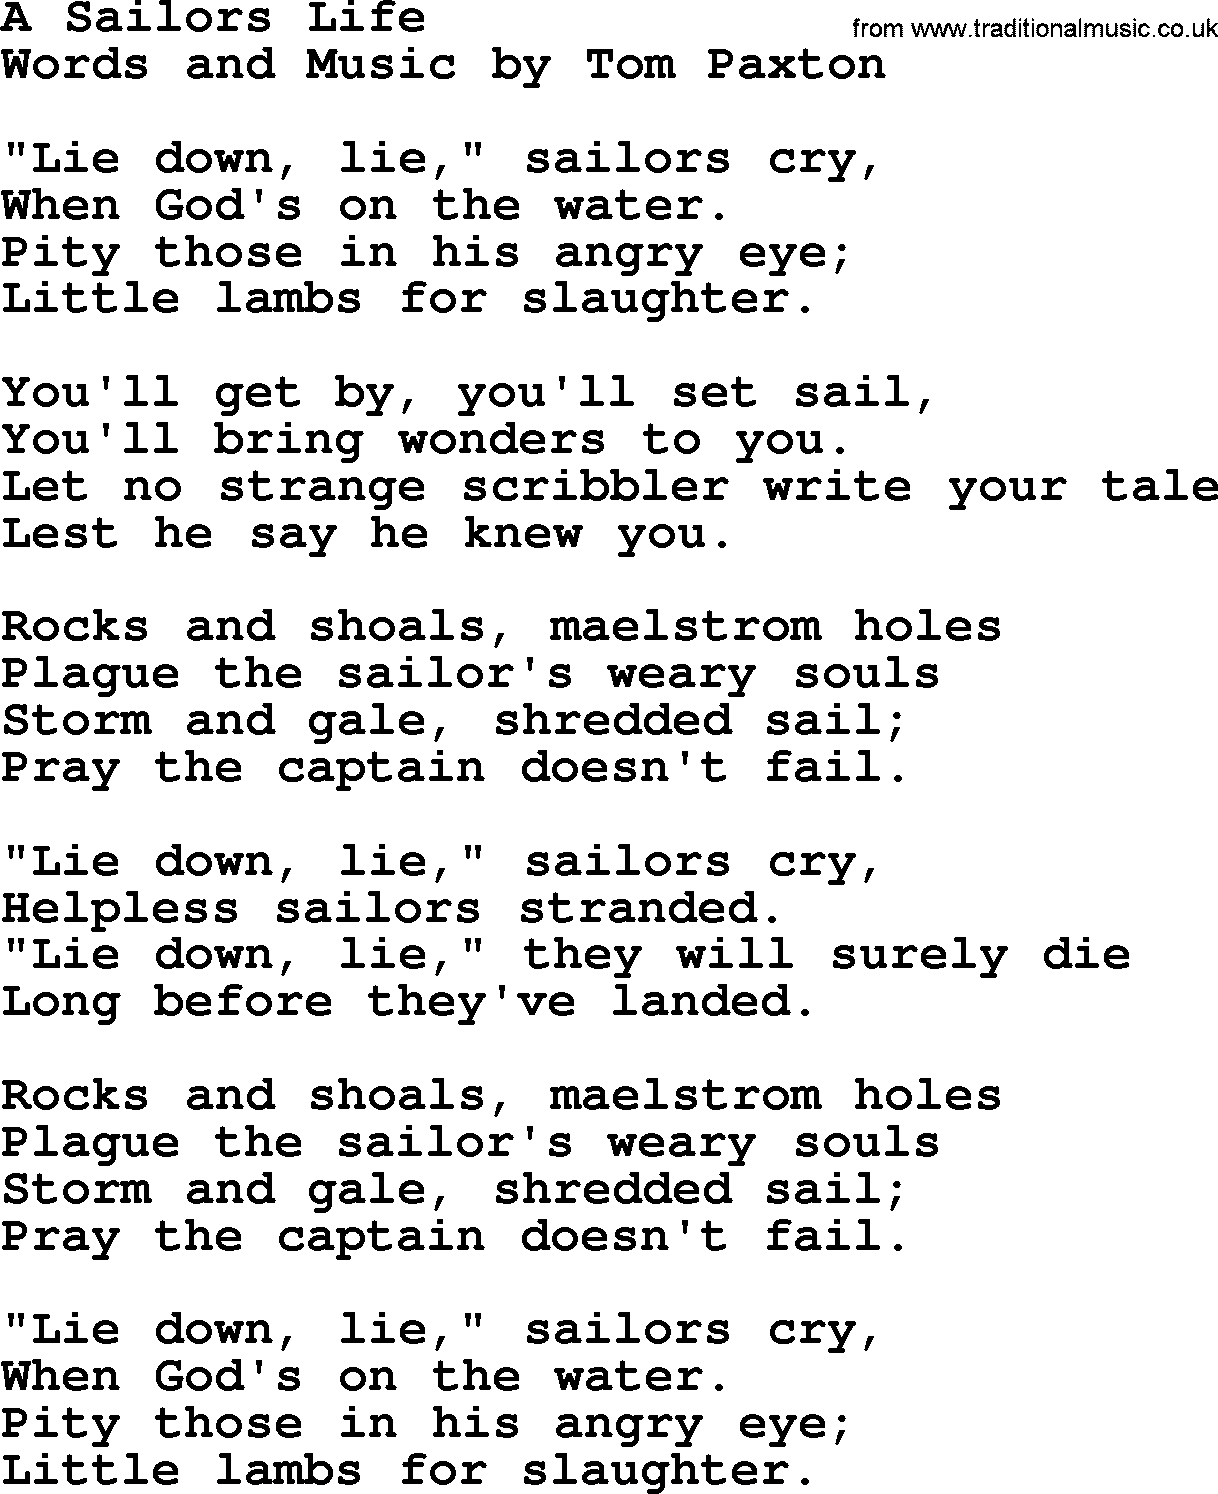 Tom Paxton song: A Sailors Life, lyrics